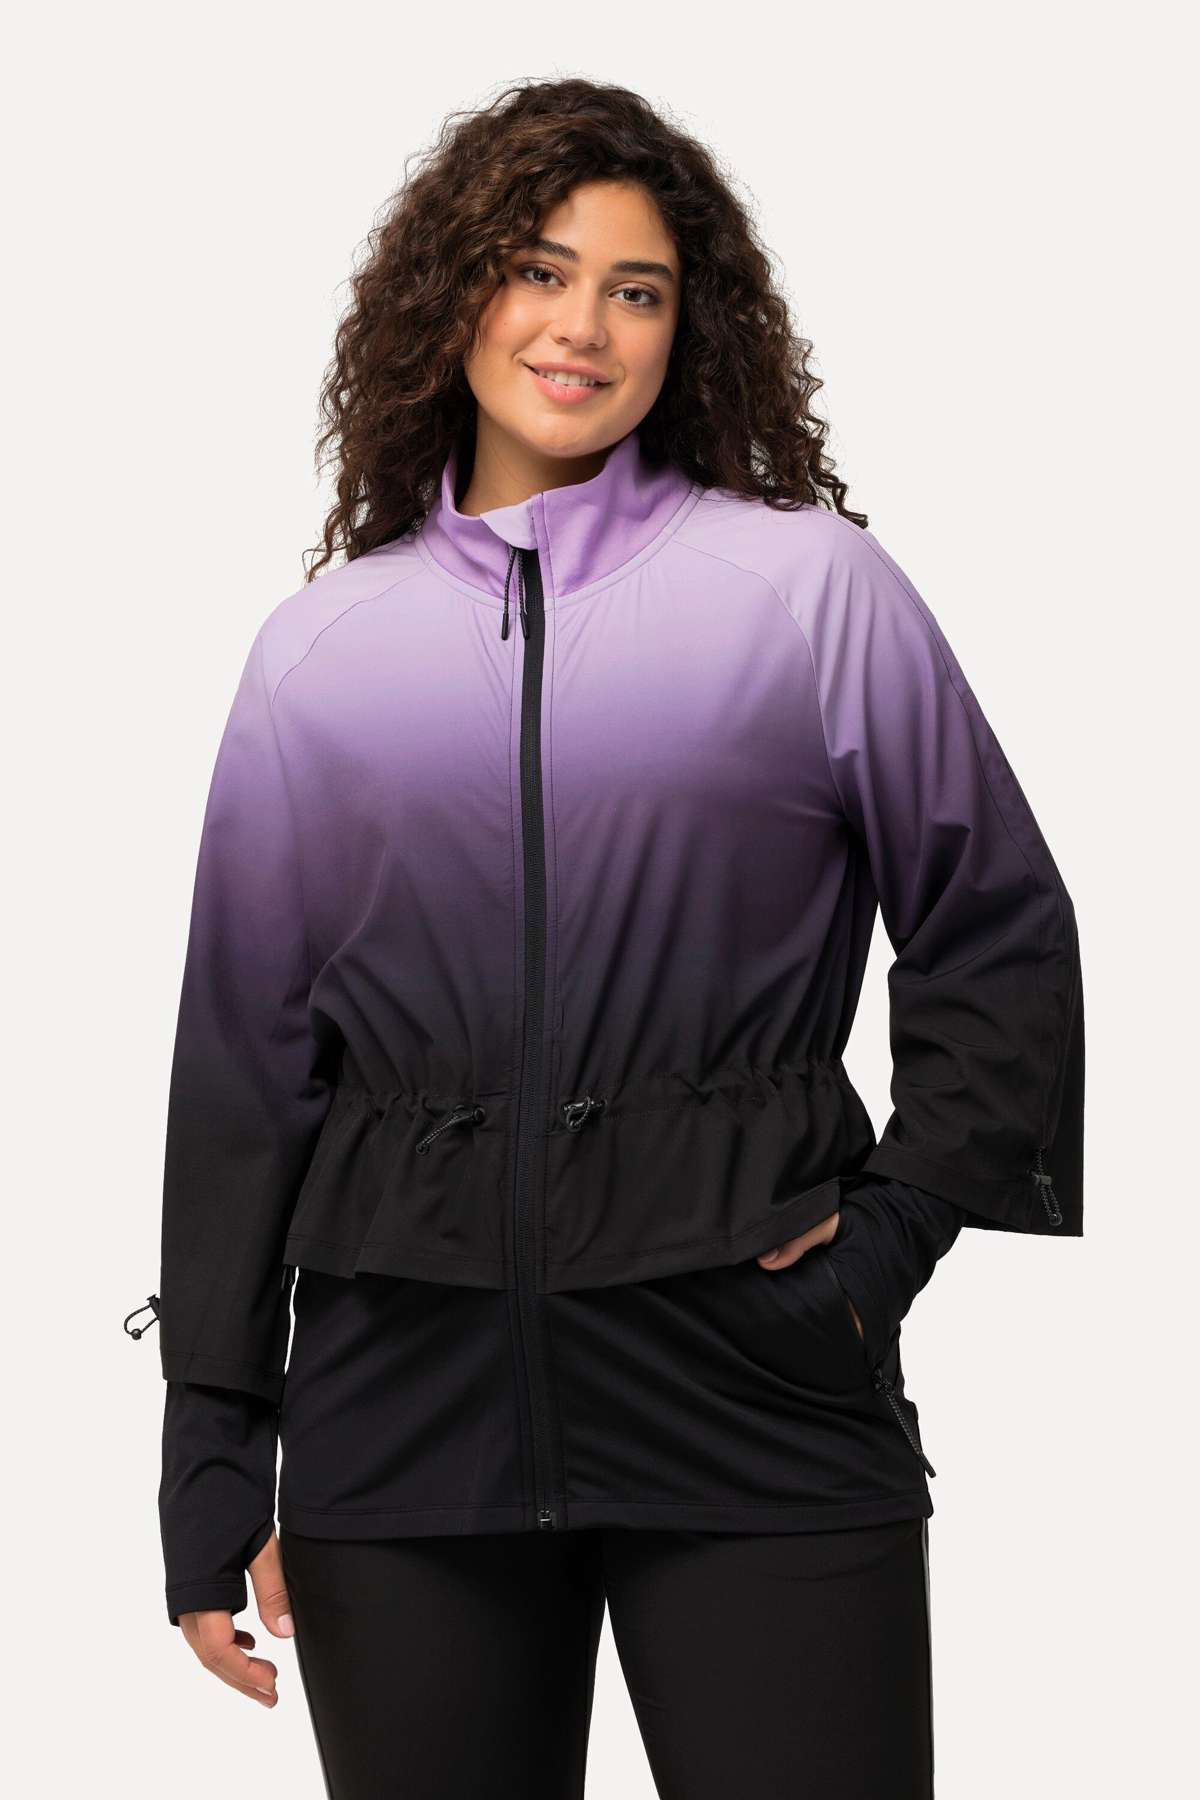 Функциональная куртка Функциональная куртка HYPRAR, водоотталкивающий воротник-стойка